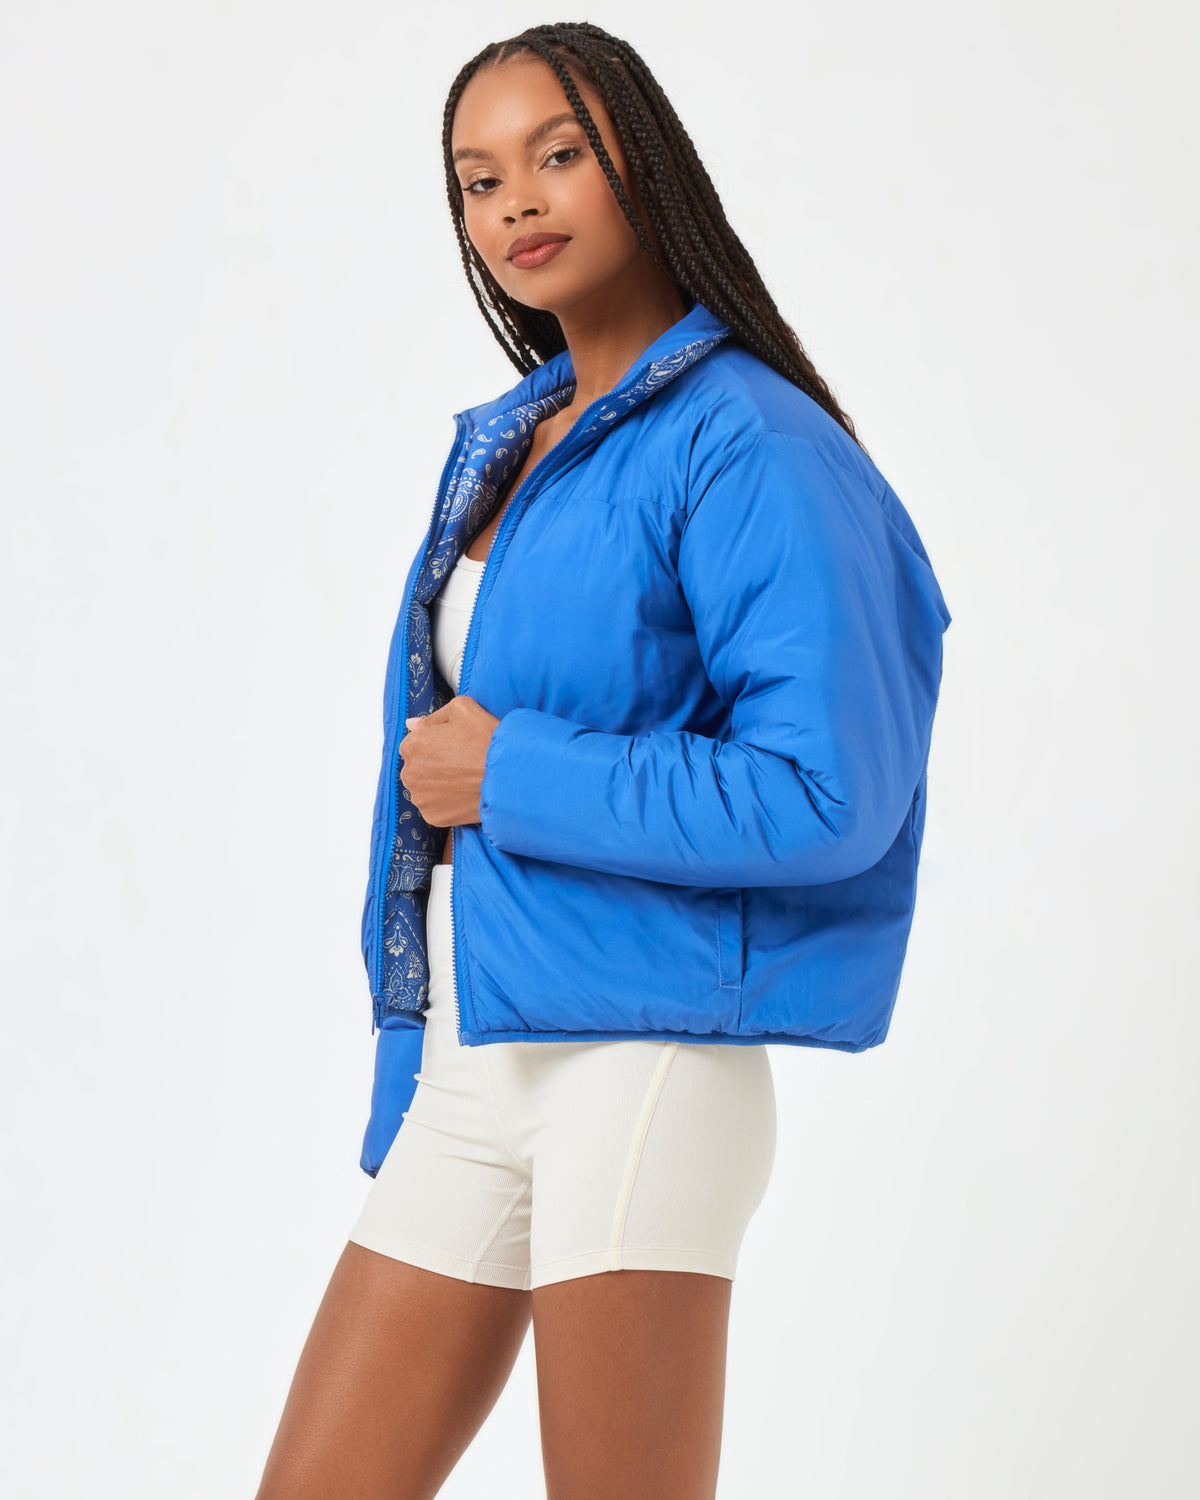 Elevation Jacket Bandana | Model: Taelor (size: S)